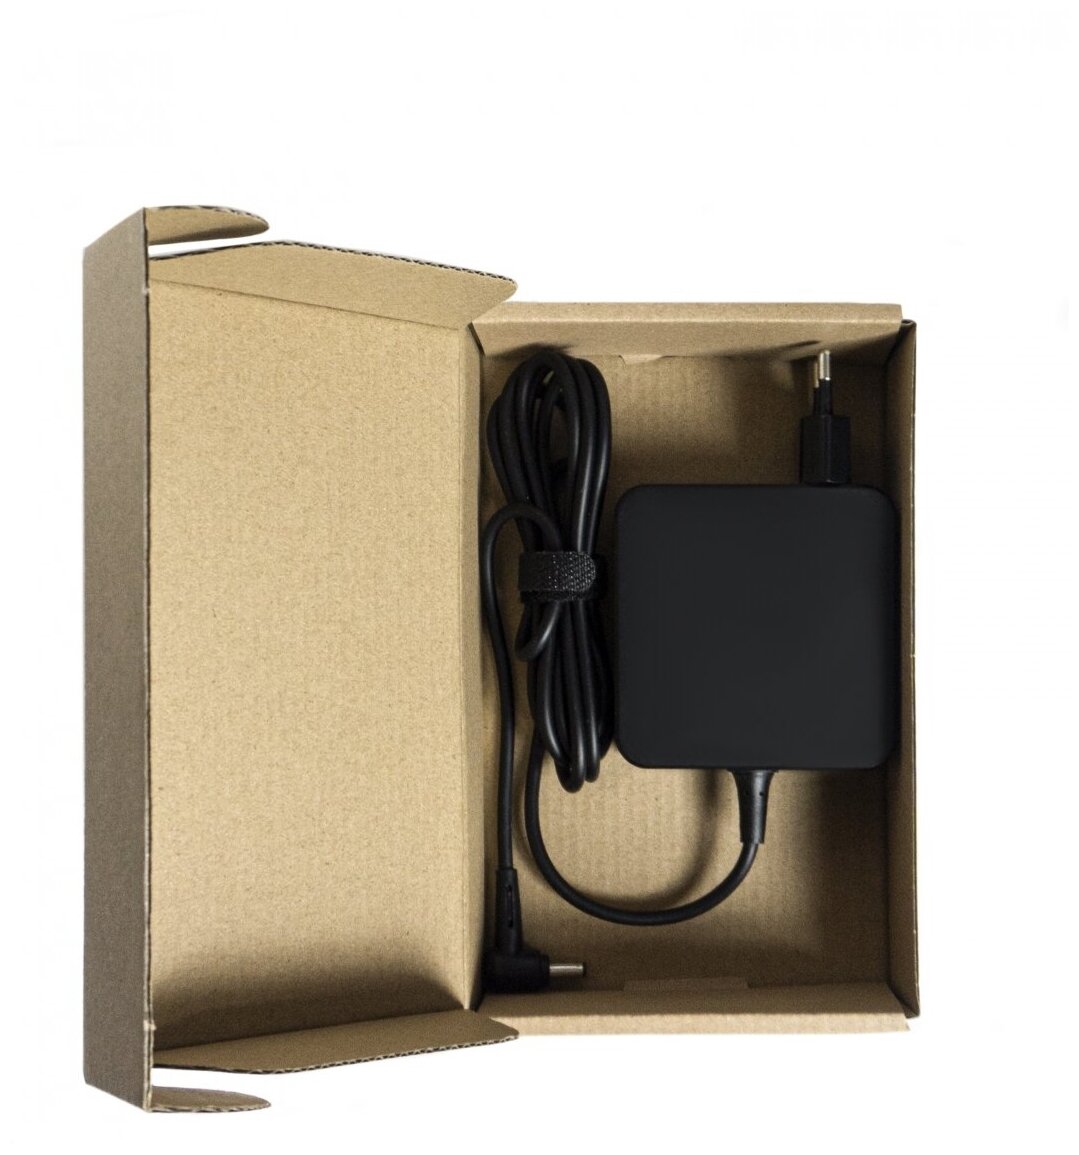 Зарядное устройство (блок питания/зарядка) для ноутбука Asus X540, UX32, UX305, UX52, UX330, 19В, 3.42А, 4.0x1.35мм, квадрат